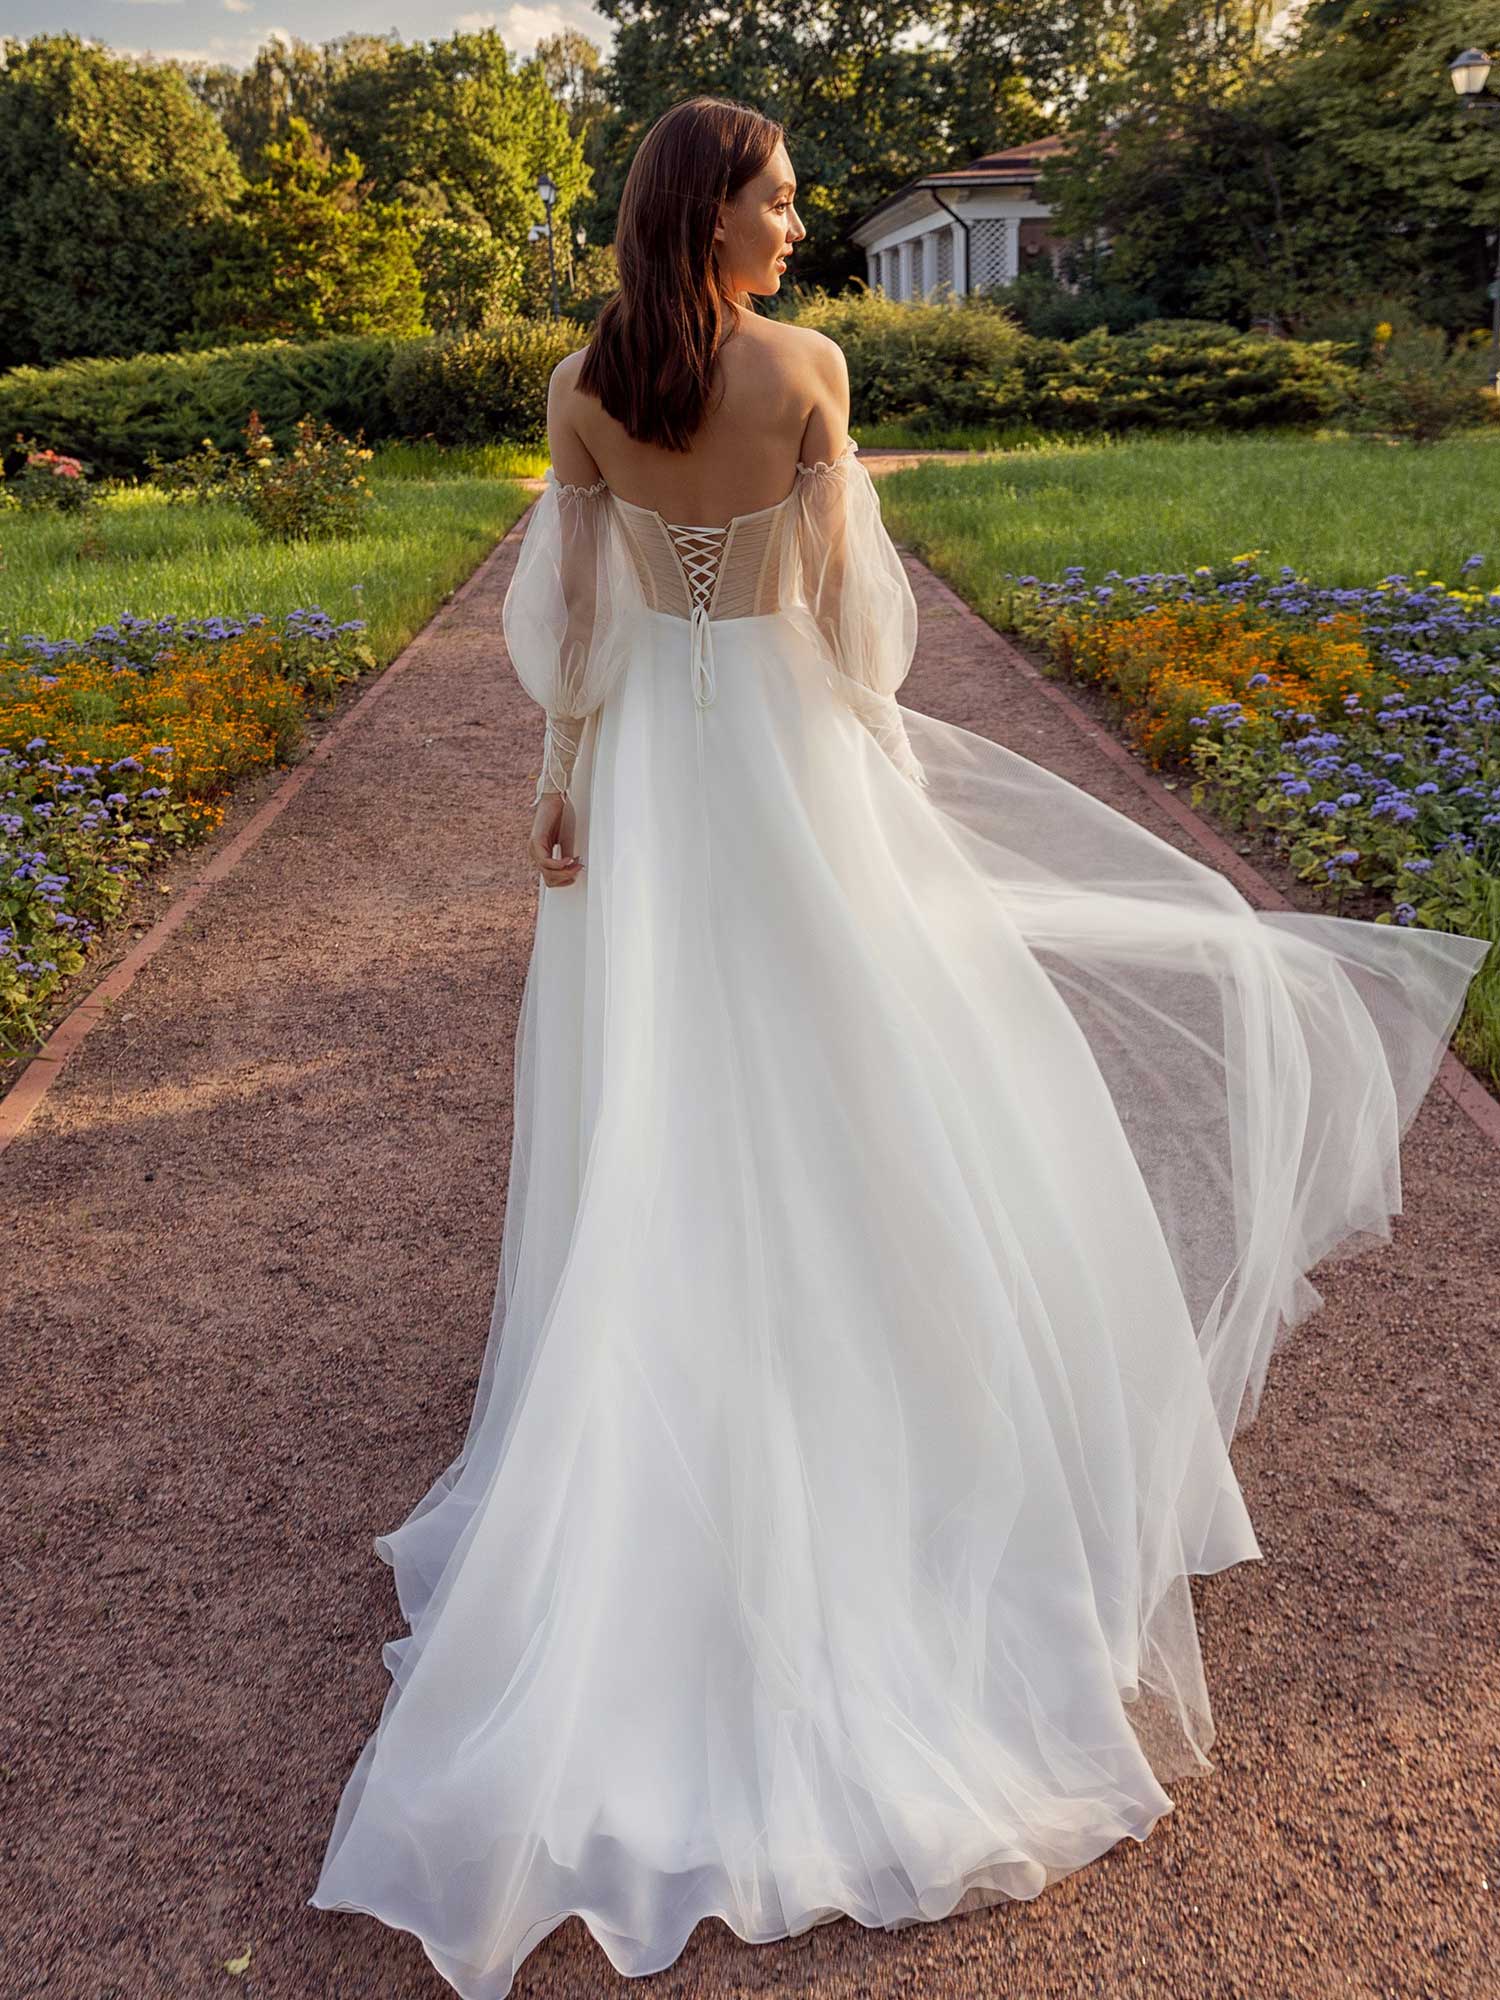 Strapless A-line wedding dress